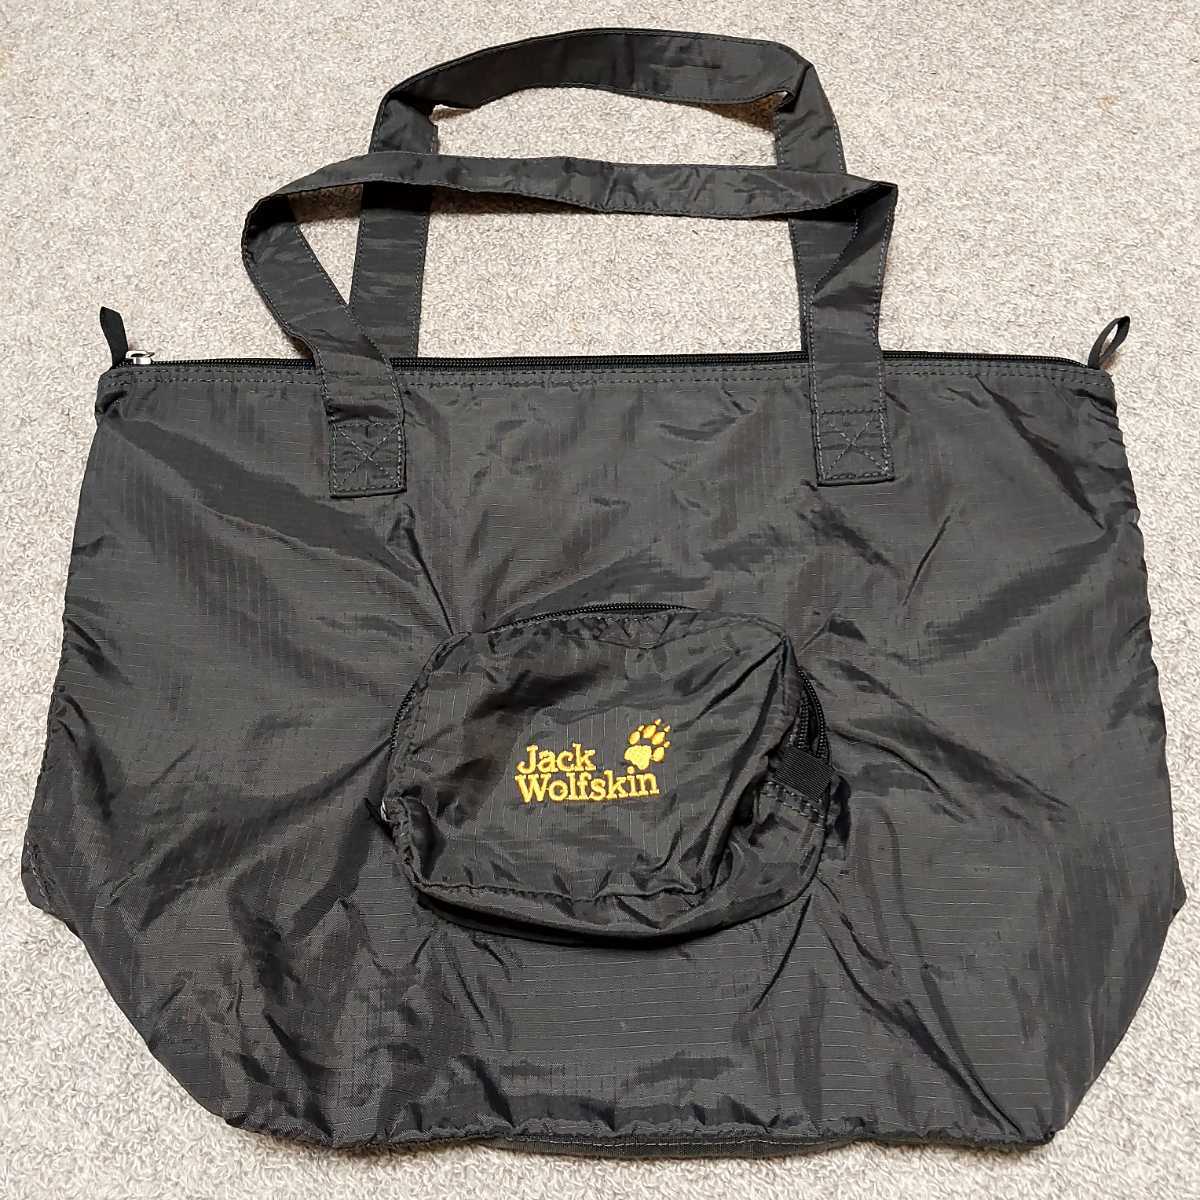 Jack Wolfskin[ подлинный товар ]poketabru эко-сумка большая сумка молния сумка стандартный товар Jack Wolfskin плечо большая сумка JWS